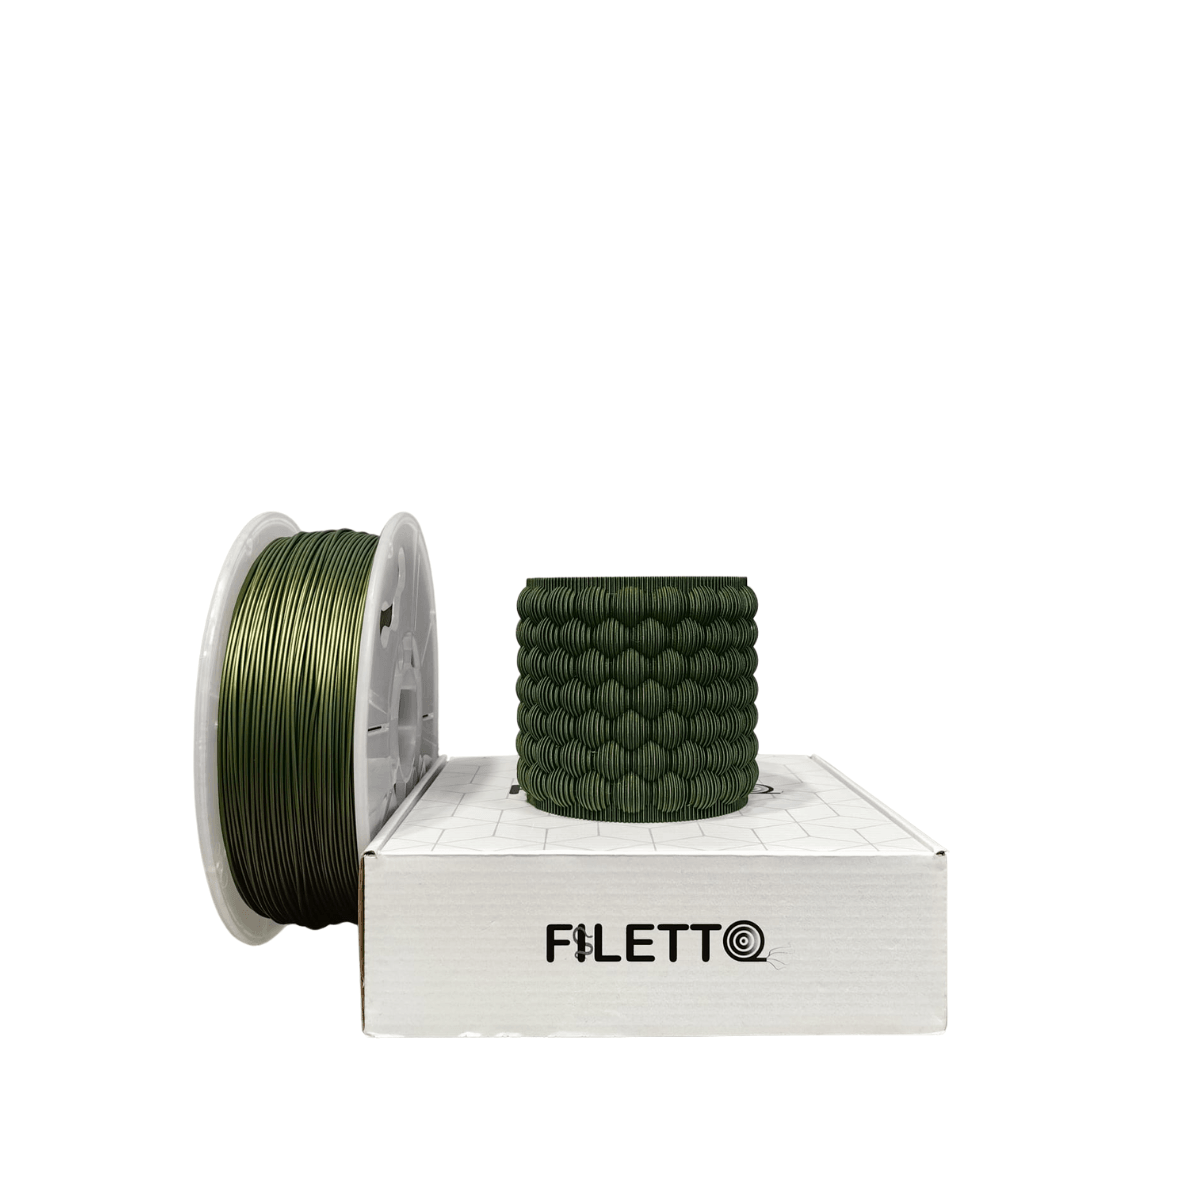 Filetto Pla+ Filament 1.75mm 1KG